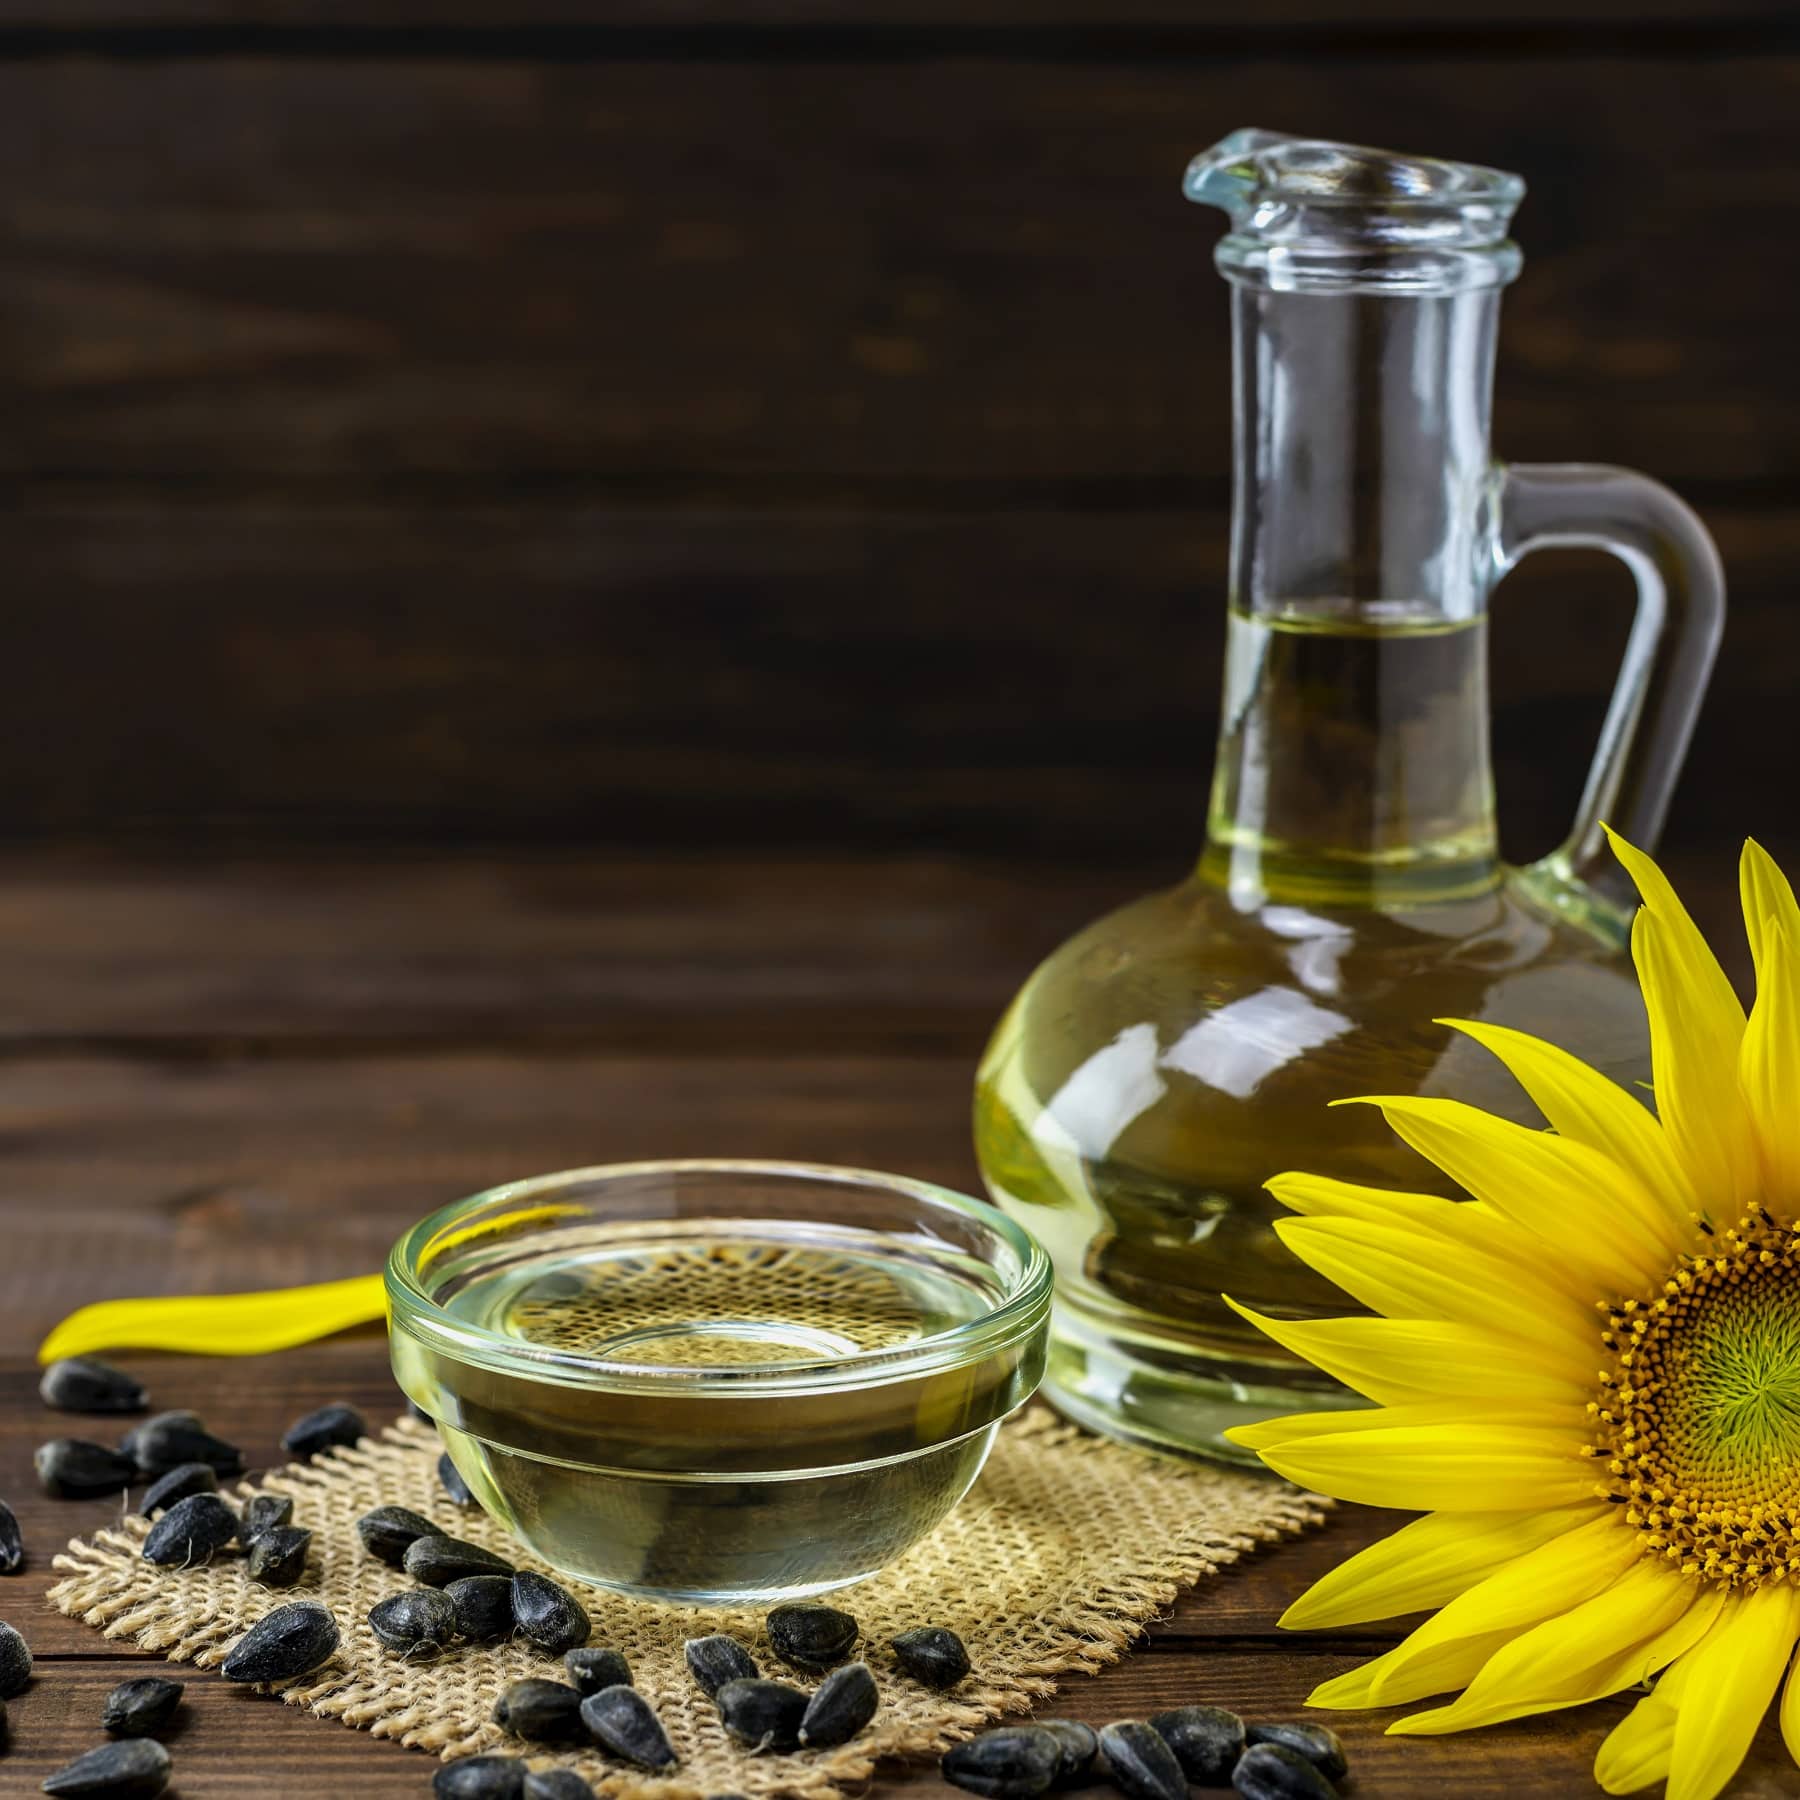 Sonnenblumenkerne und eine Pflanze auf einem Holztisch mit einem Schälchen Öl sowie einer Flasche mit Öl.